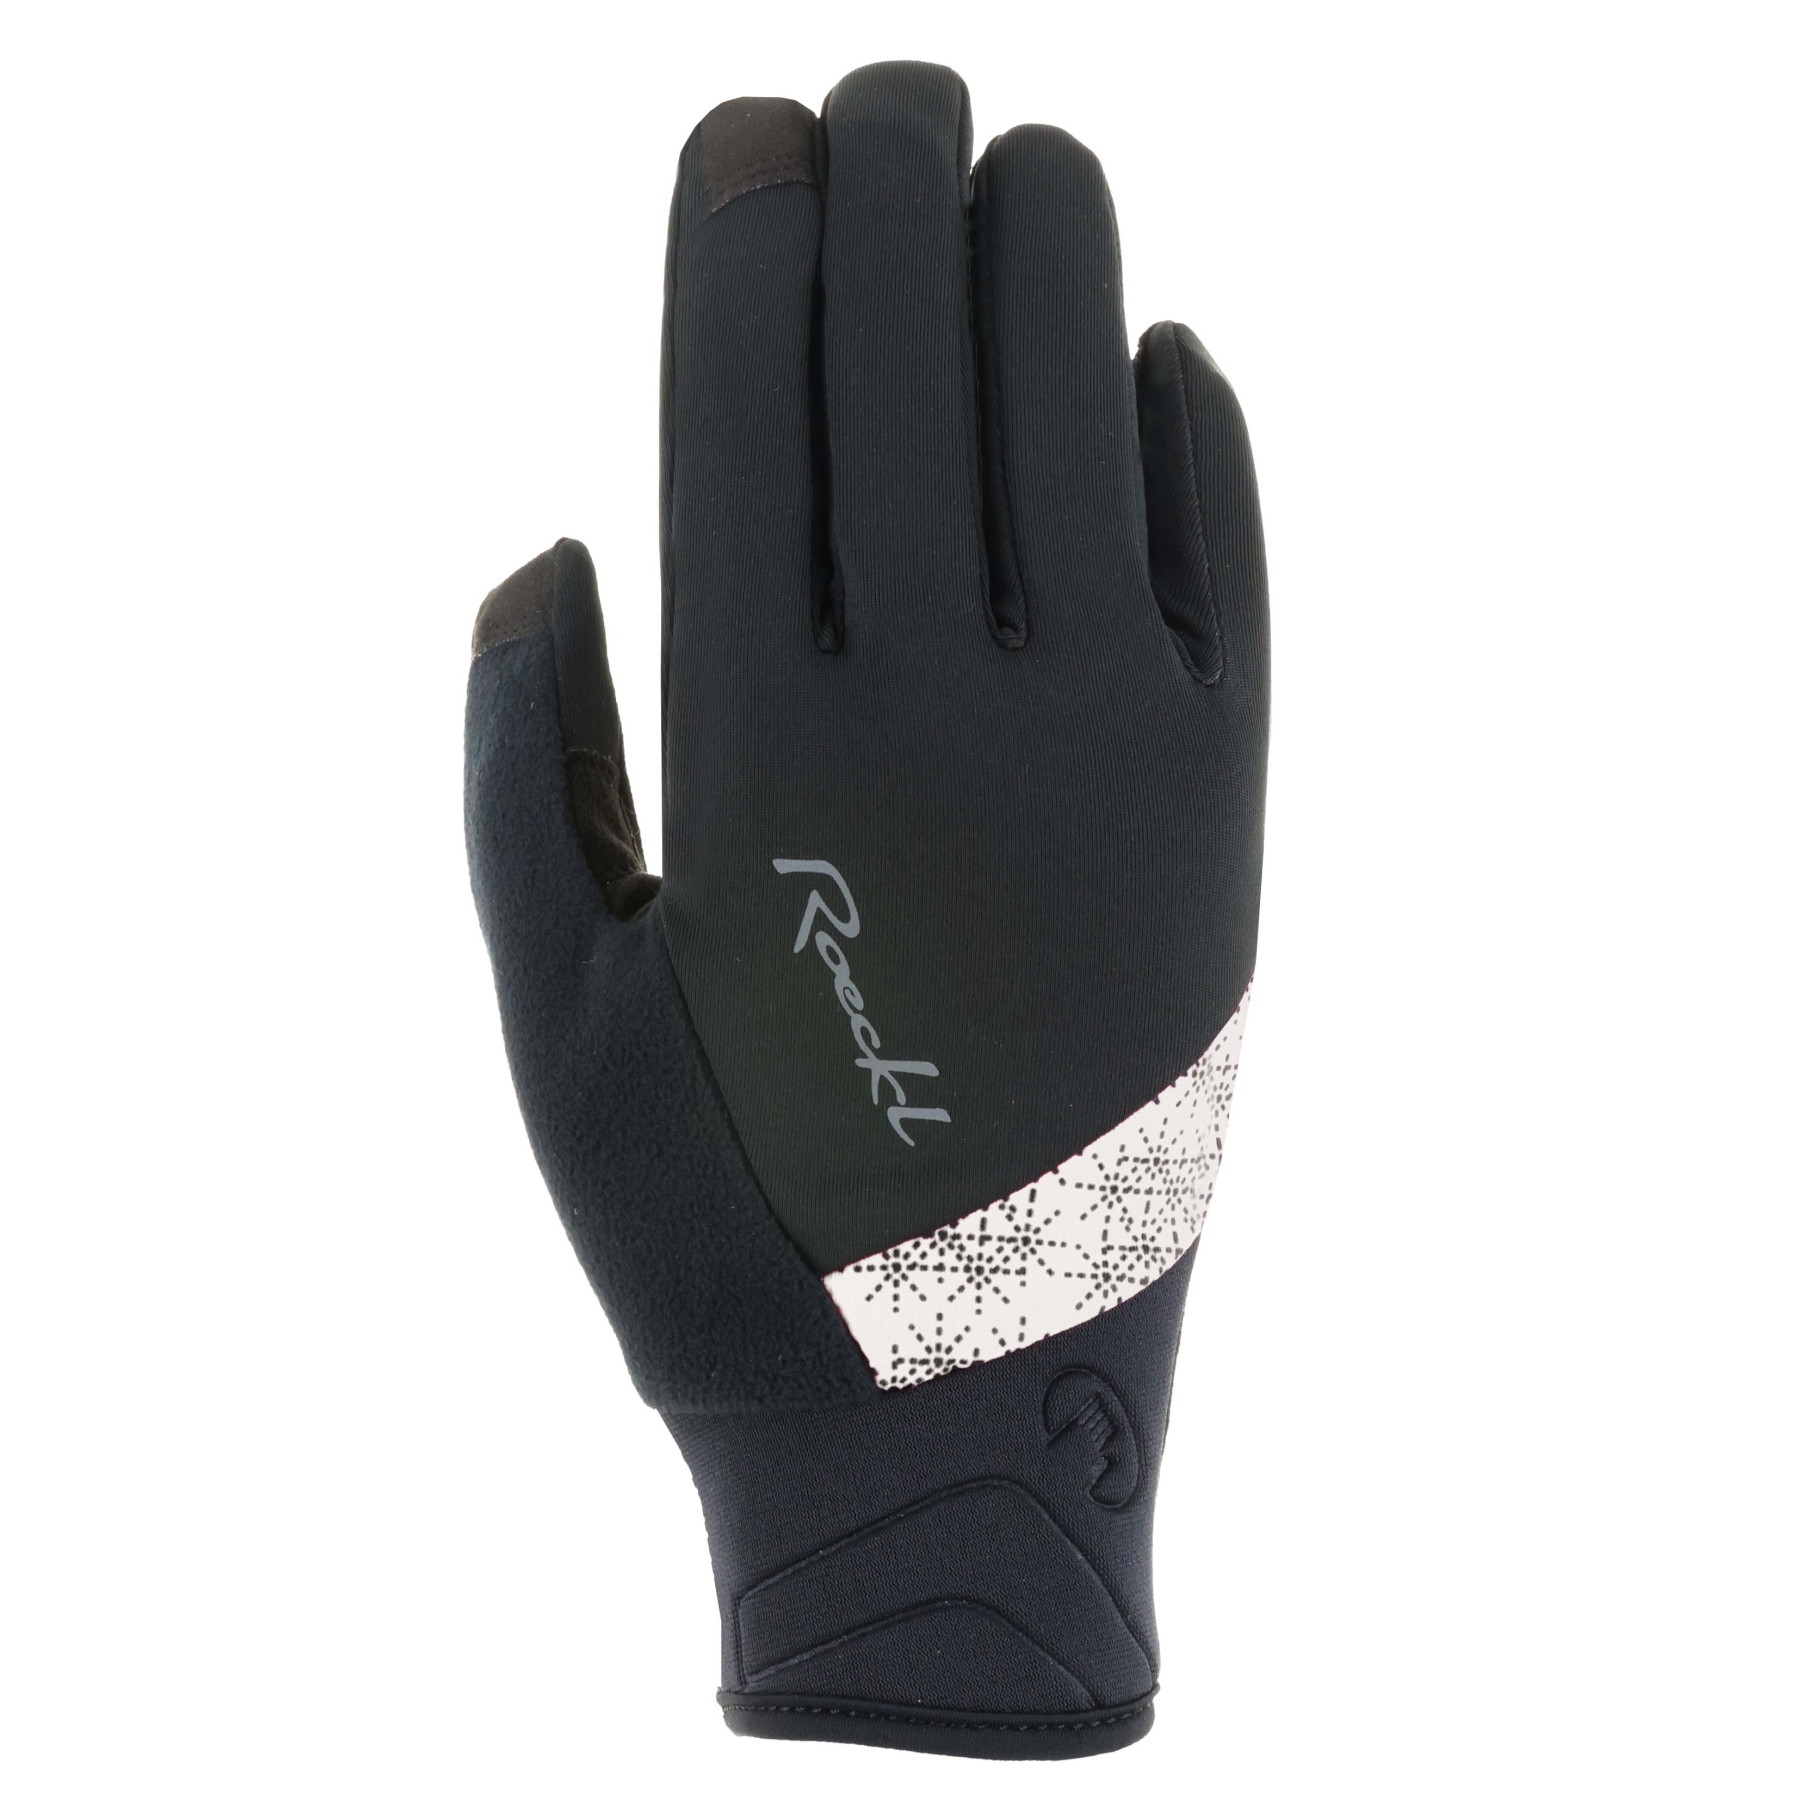 Productfoto van Roeckl Sports Waldau Damen Fietshandschoenen - zwart/wit 9100